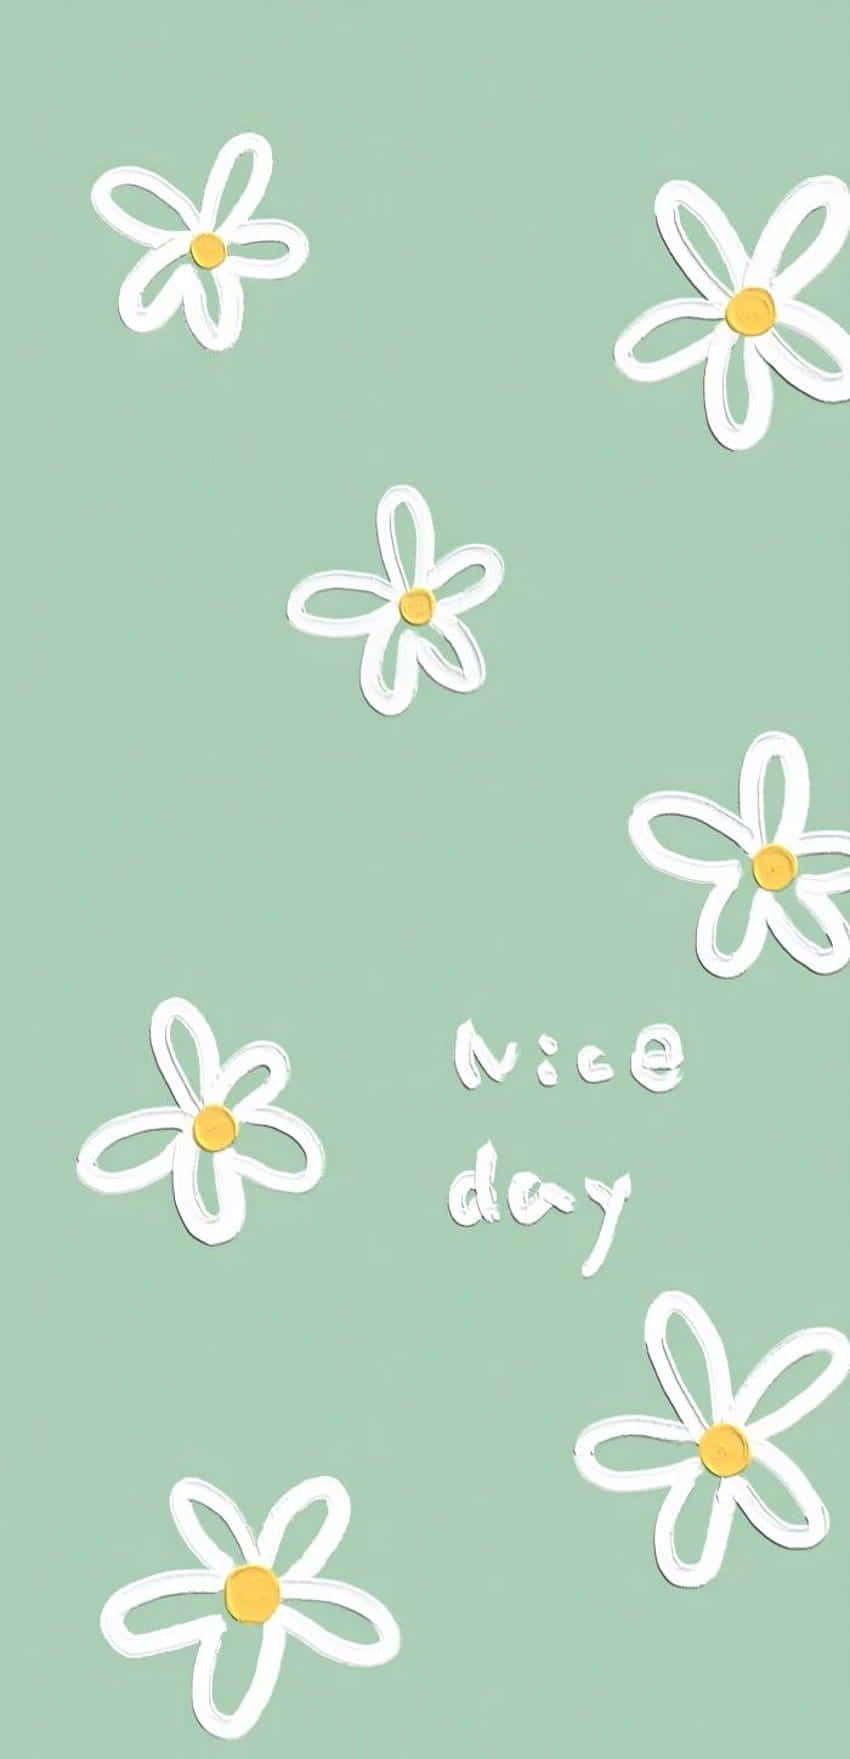 Lindasmargaritas Blancas Verdes De Salvia. Buen Día. Fondo de pantalla